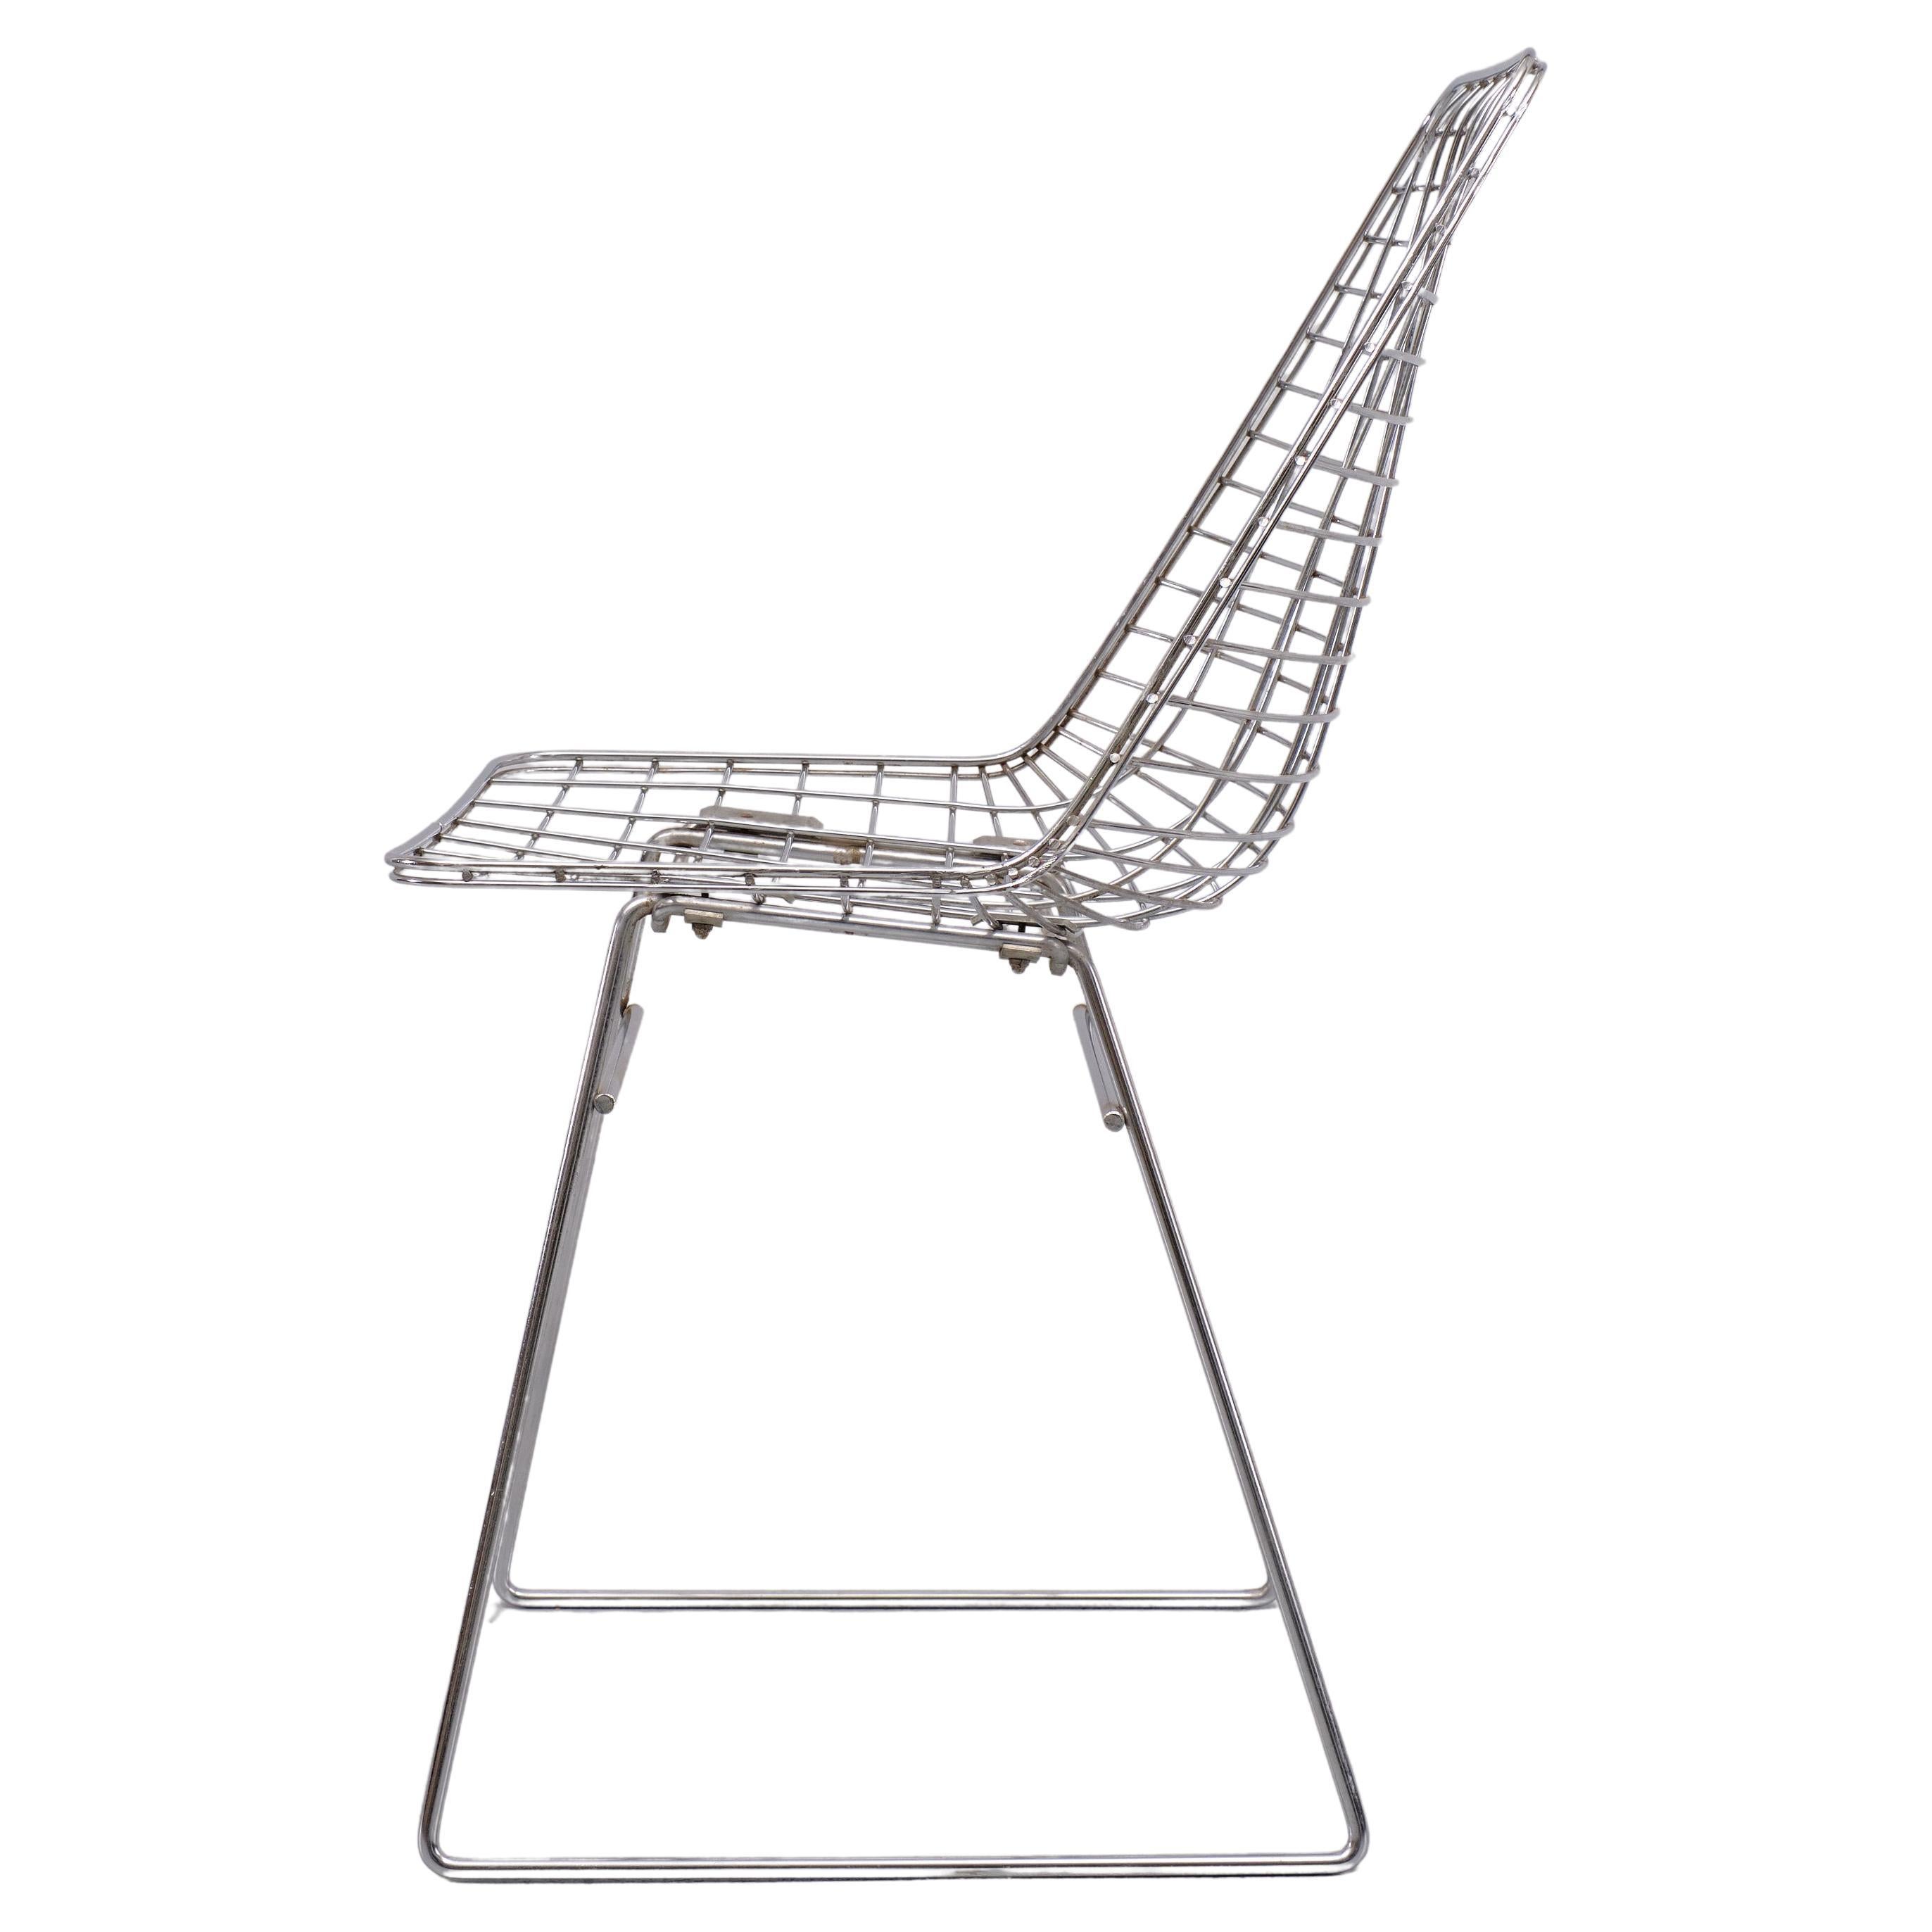 Très belle chaise en fil de fer chromé sur acier . Par Pastoe  1960s . 
hauteur d'assise 46 cm 